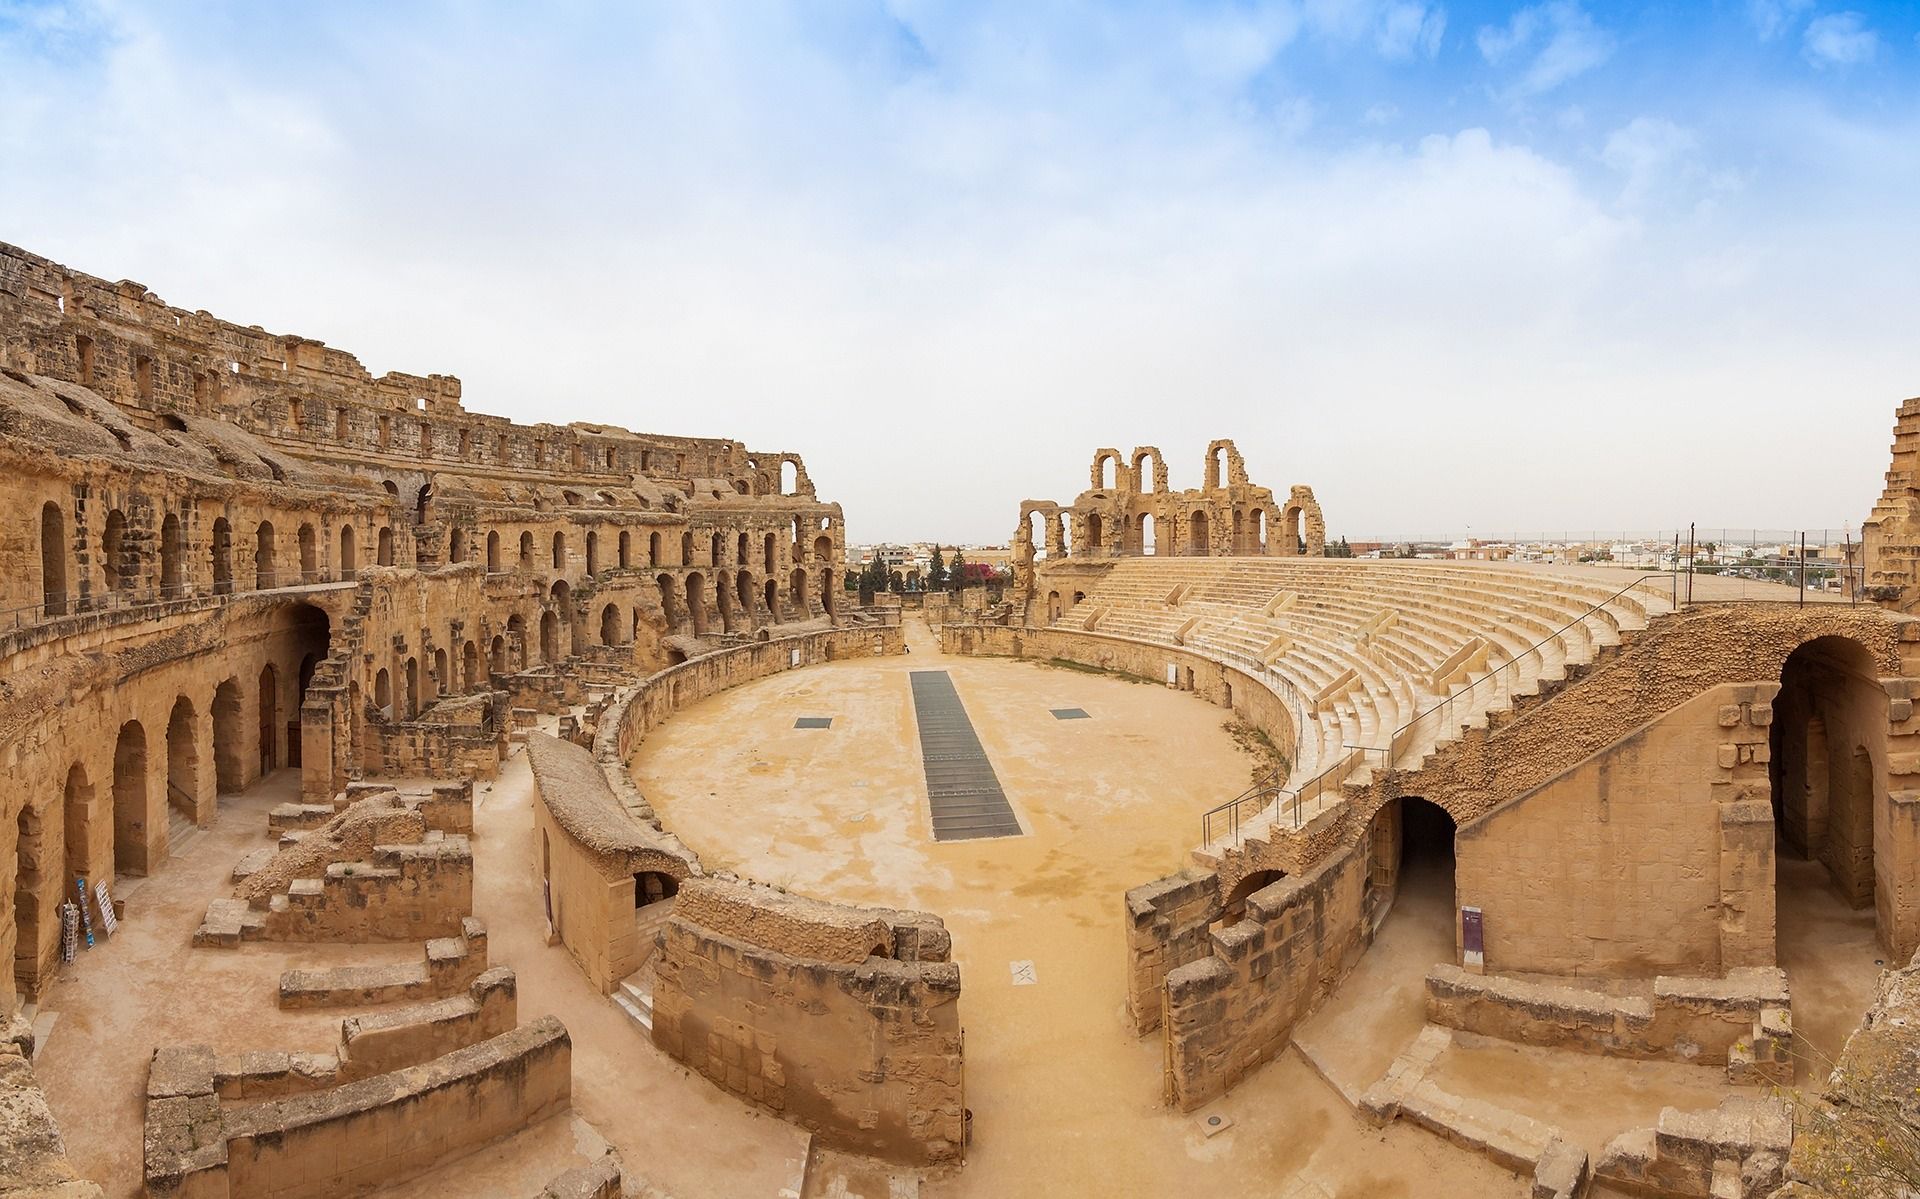 El Jem Amphitheatre in Tunisia